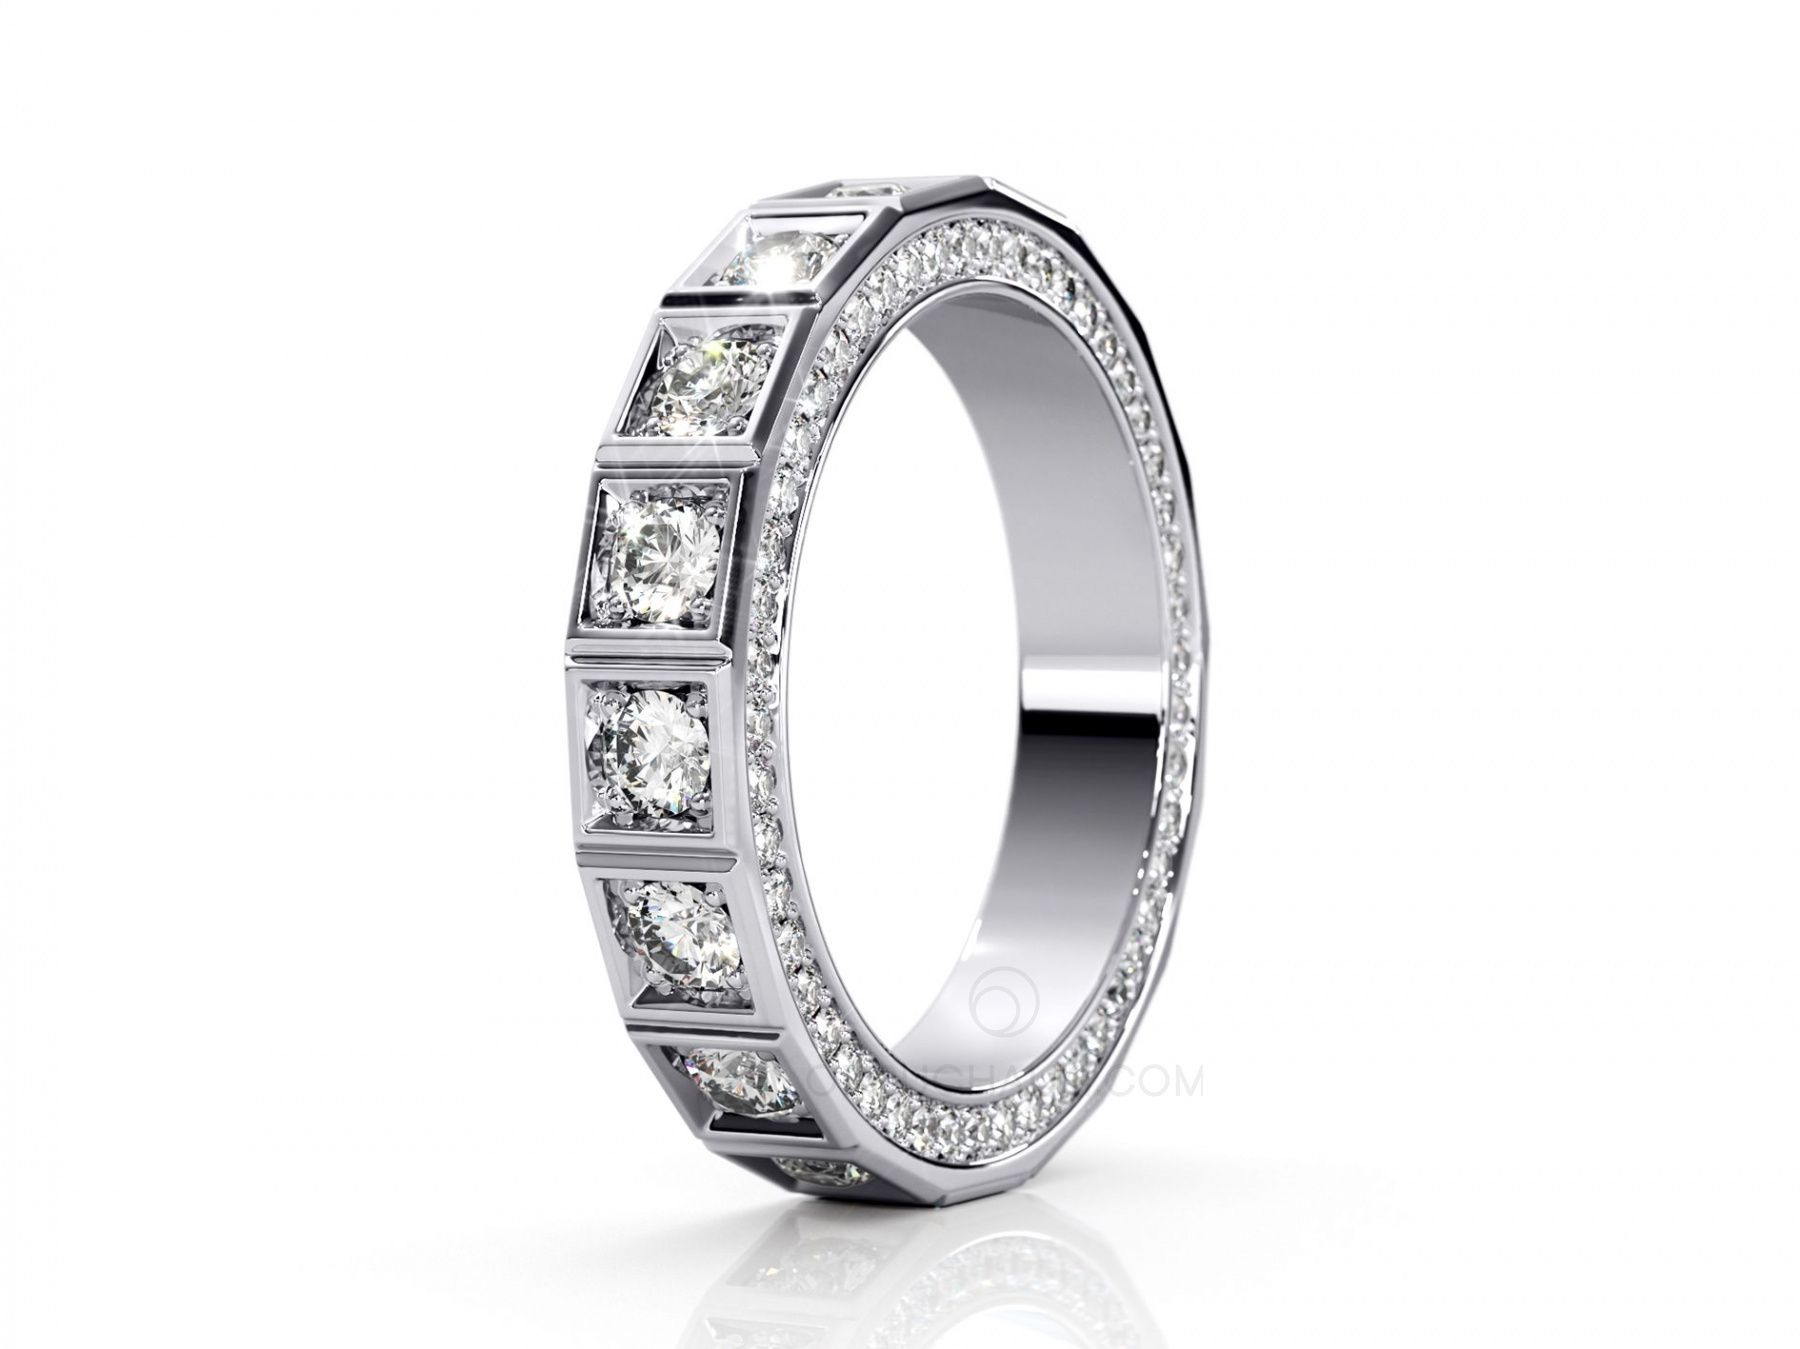 Купить Обручальное кольцо - дорожка с бриллиантами YOUR MAJESTY в интернет-магазине: уникальный дизайн, доступная цена, отзывы, описание